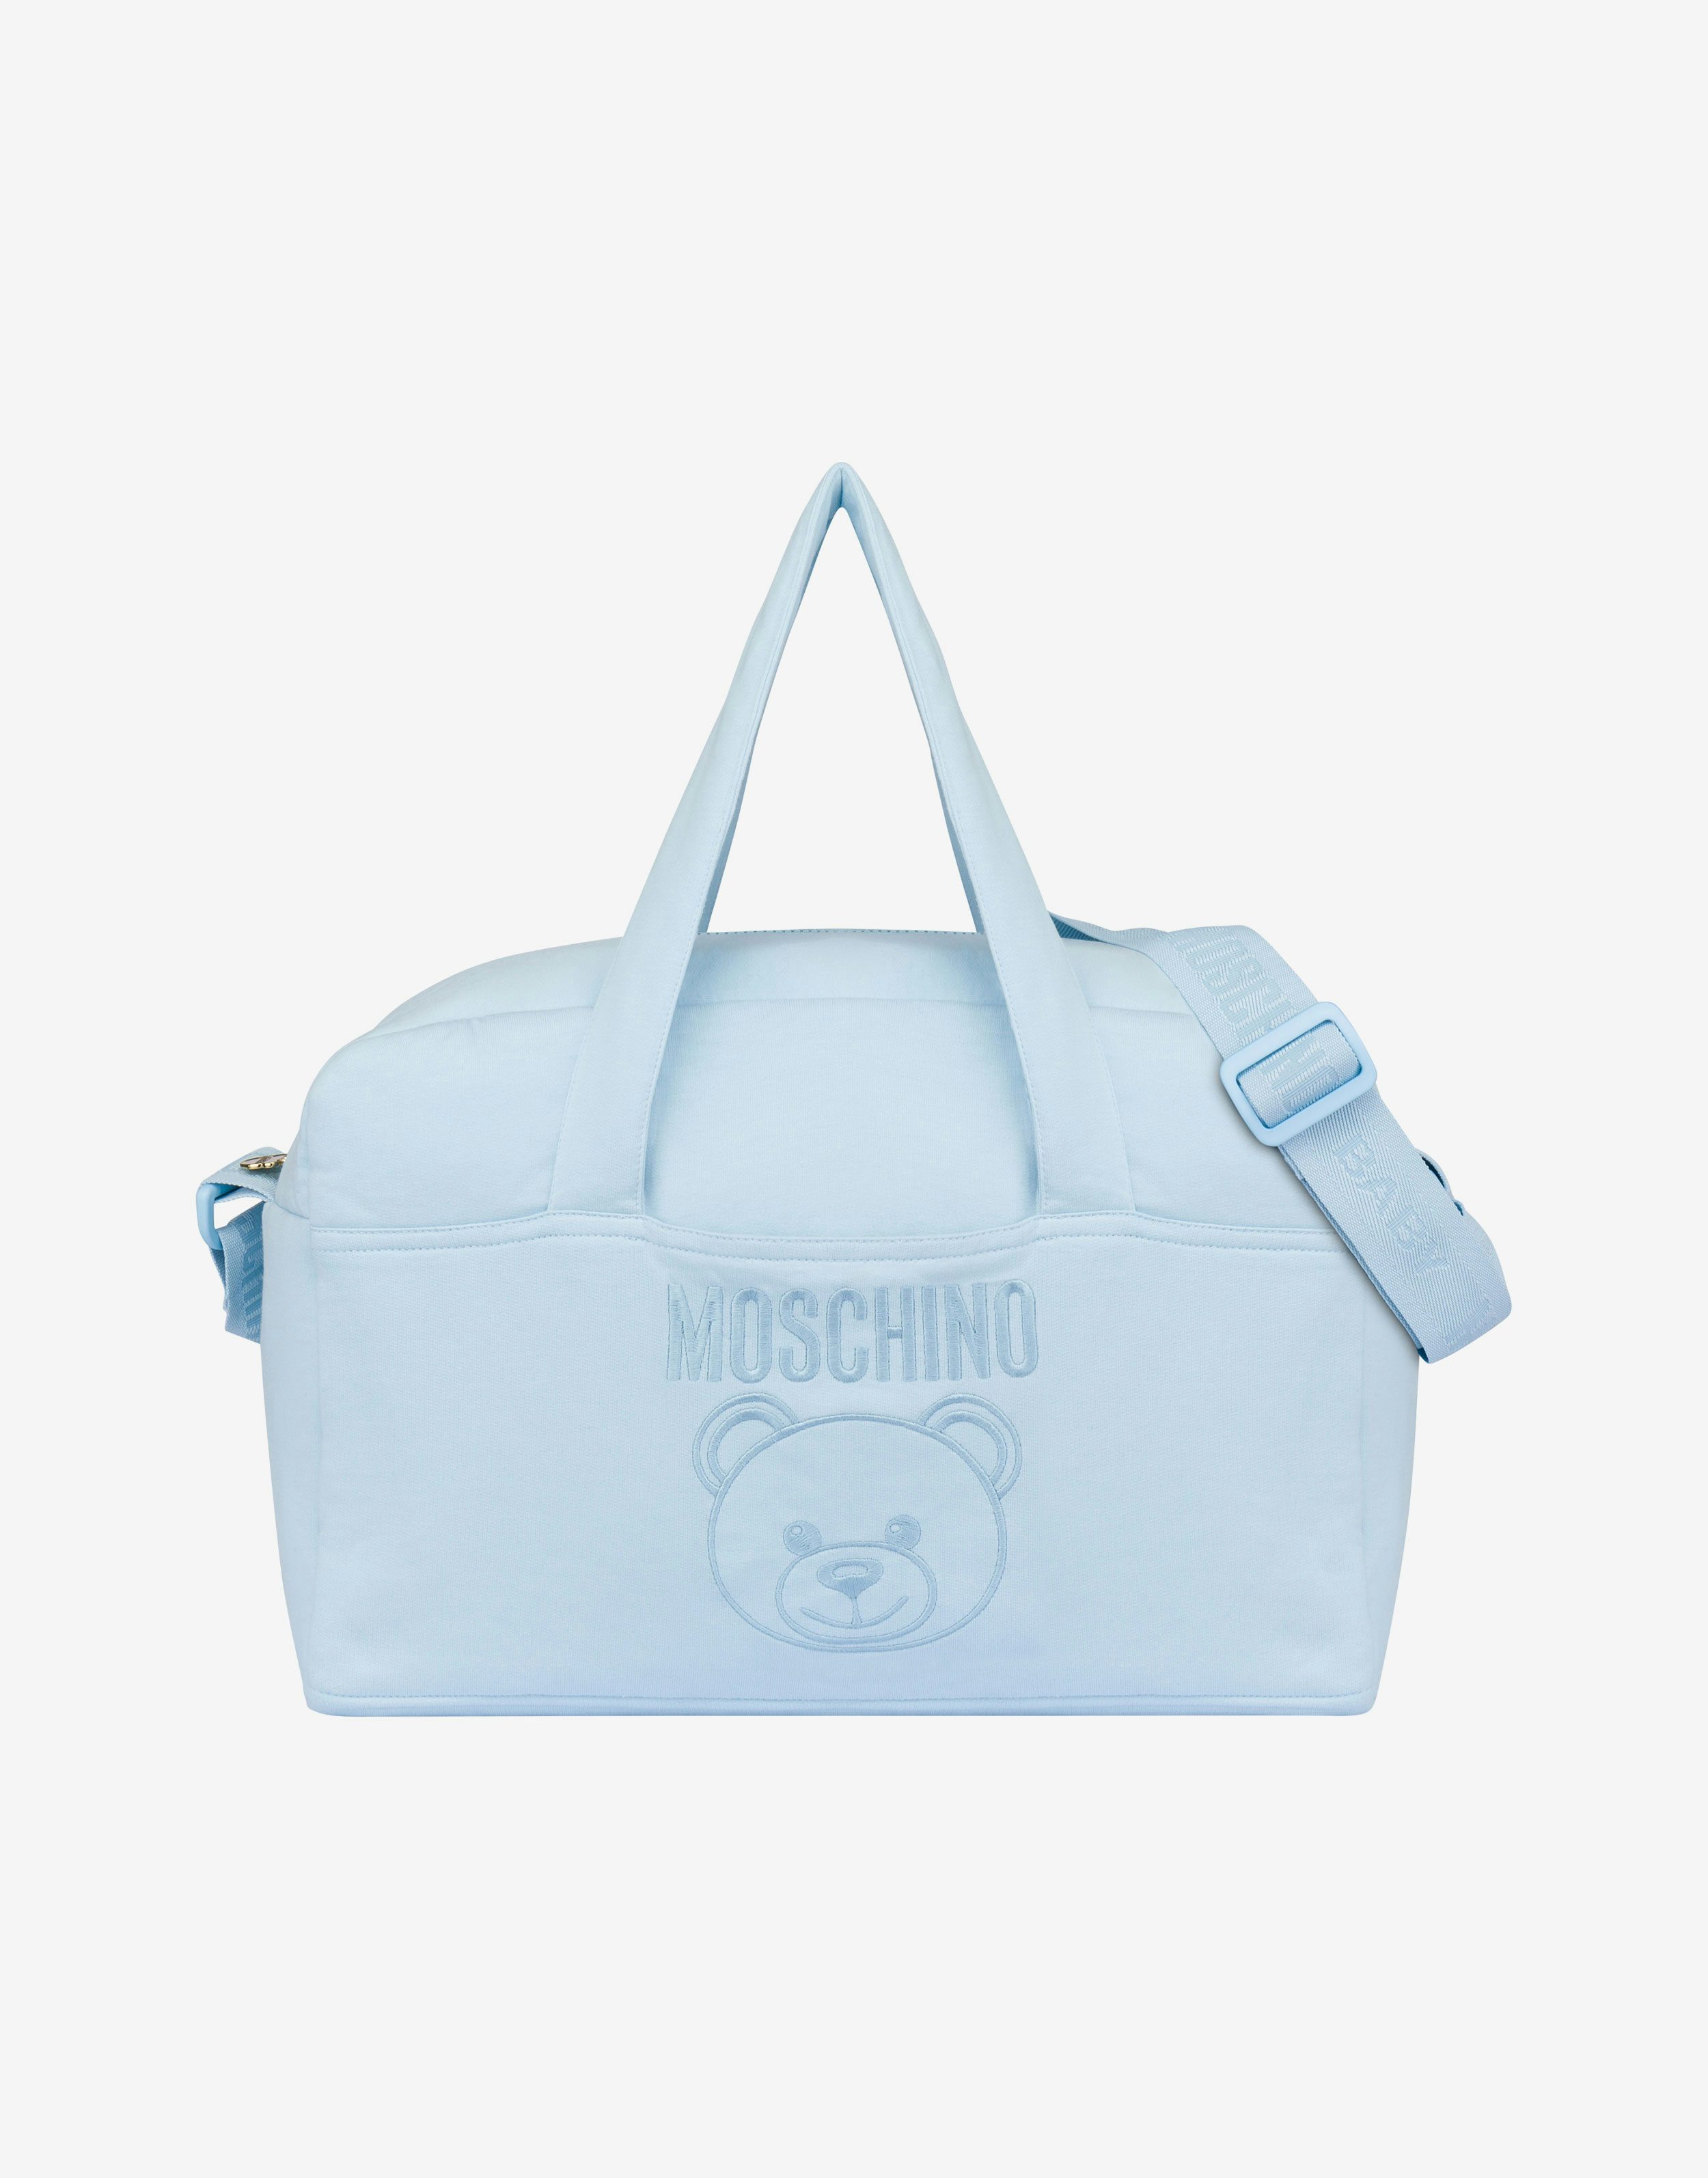 Moschino muttertasche mit wickelunterlage teddy embroidery